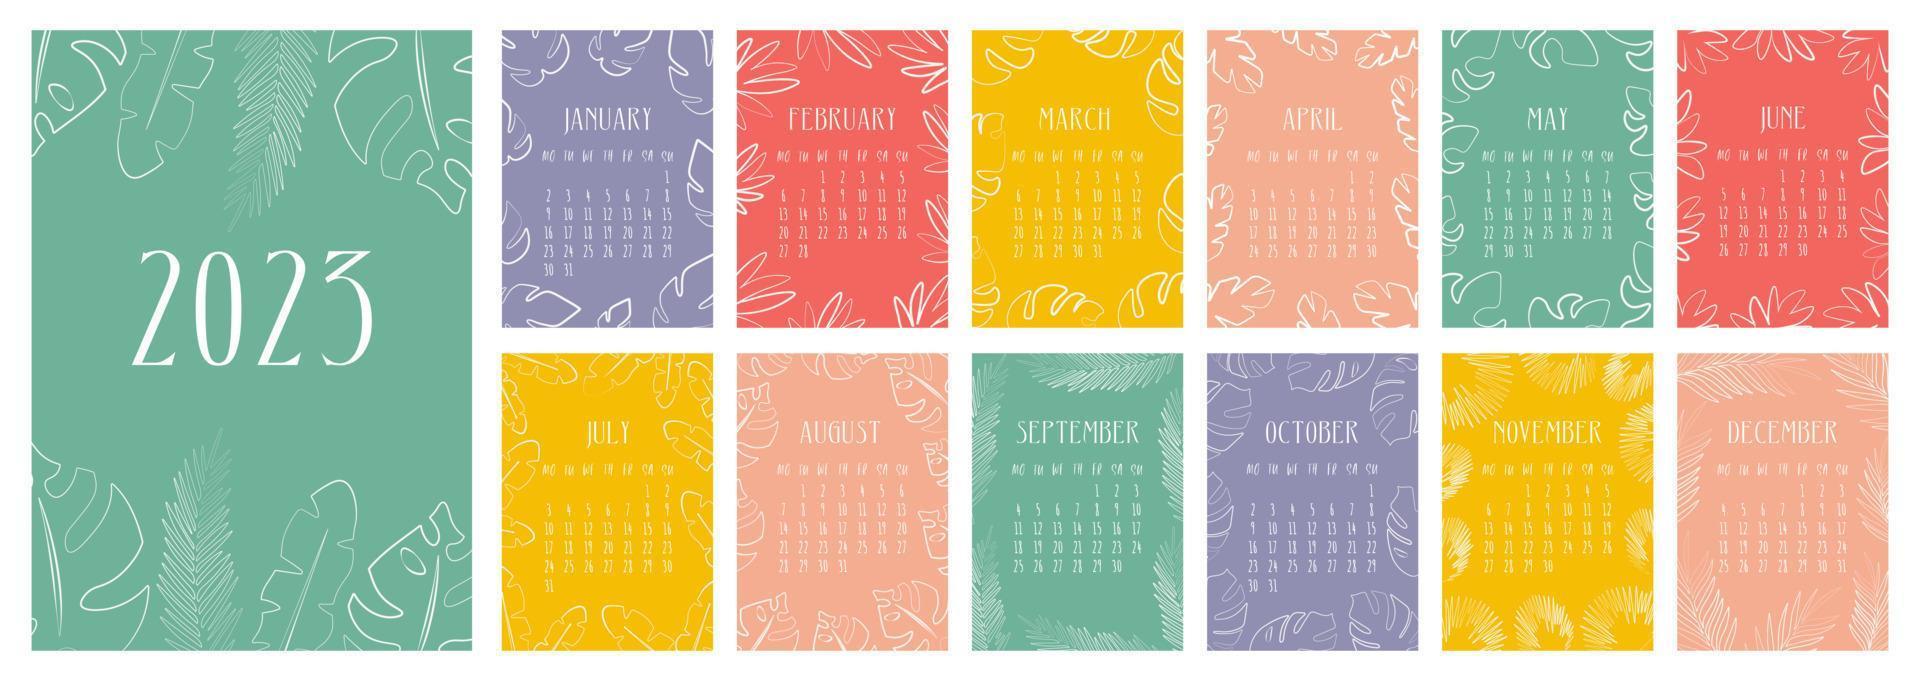 calendrier vectoriel pour 2023. couvertures et pages de 12 mois lumineuses avec des feuilles tropicales et de palmiers. conçu dans un style abstrait minimaliste à la mode. un calendrier moderne pour le bureau, l'organisateur ou pour un cadeau.